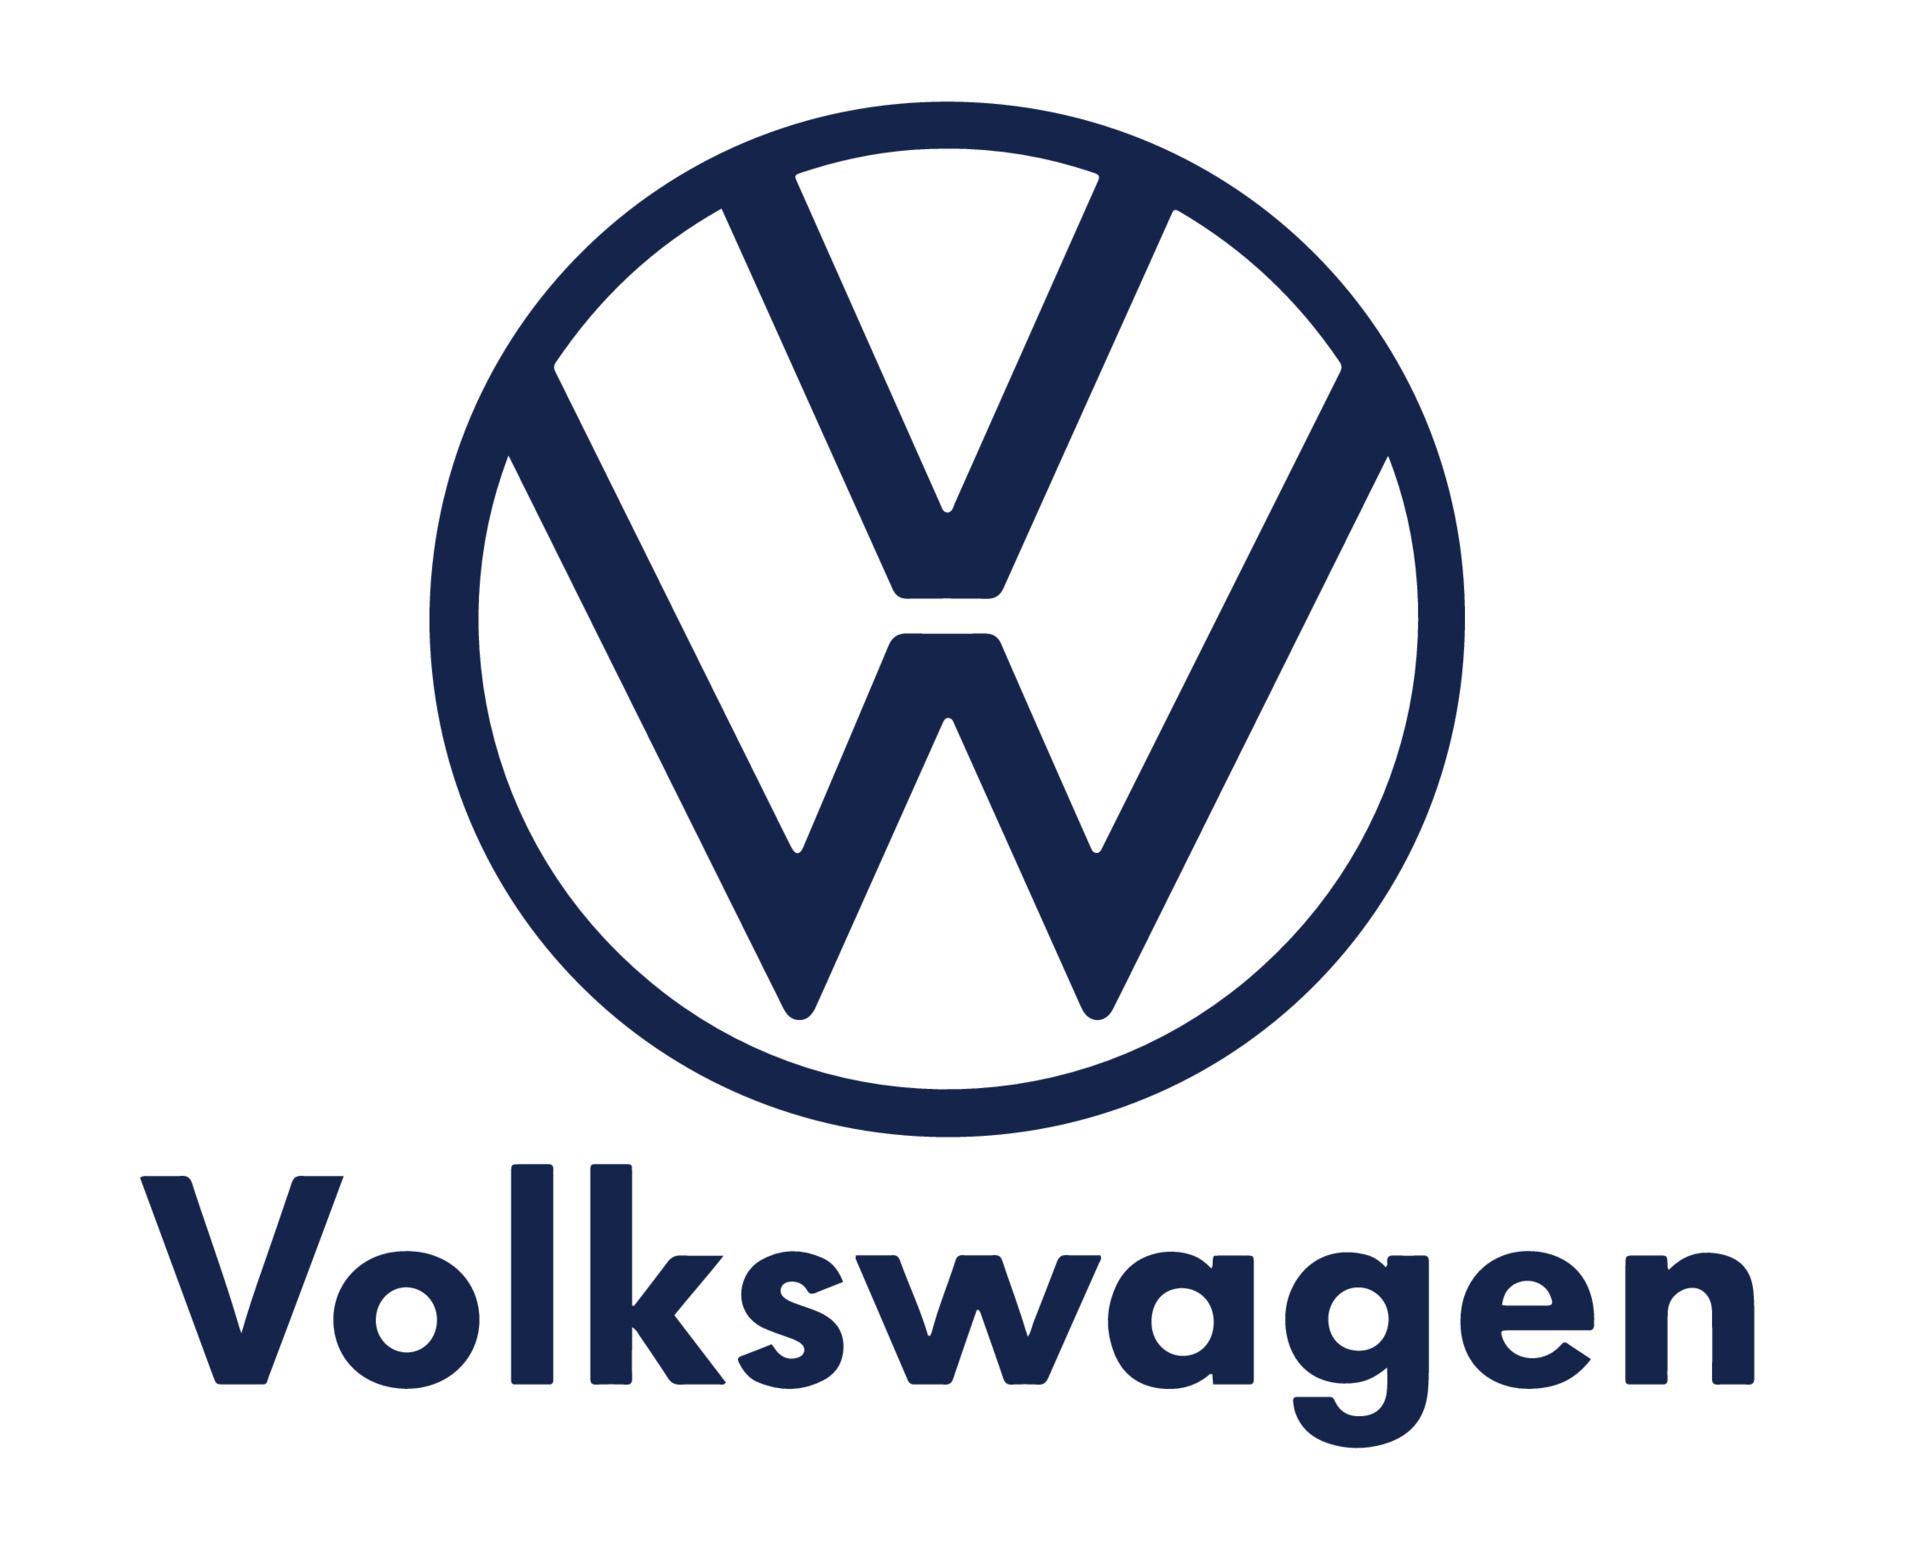 Volkswagen_VW_vans_logo_marinbla-_caravan-eskilstuna